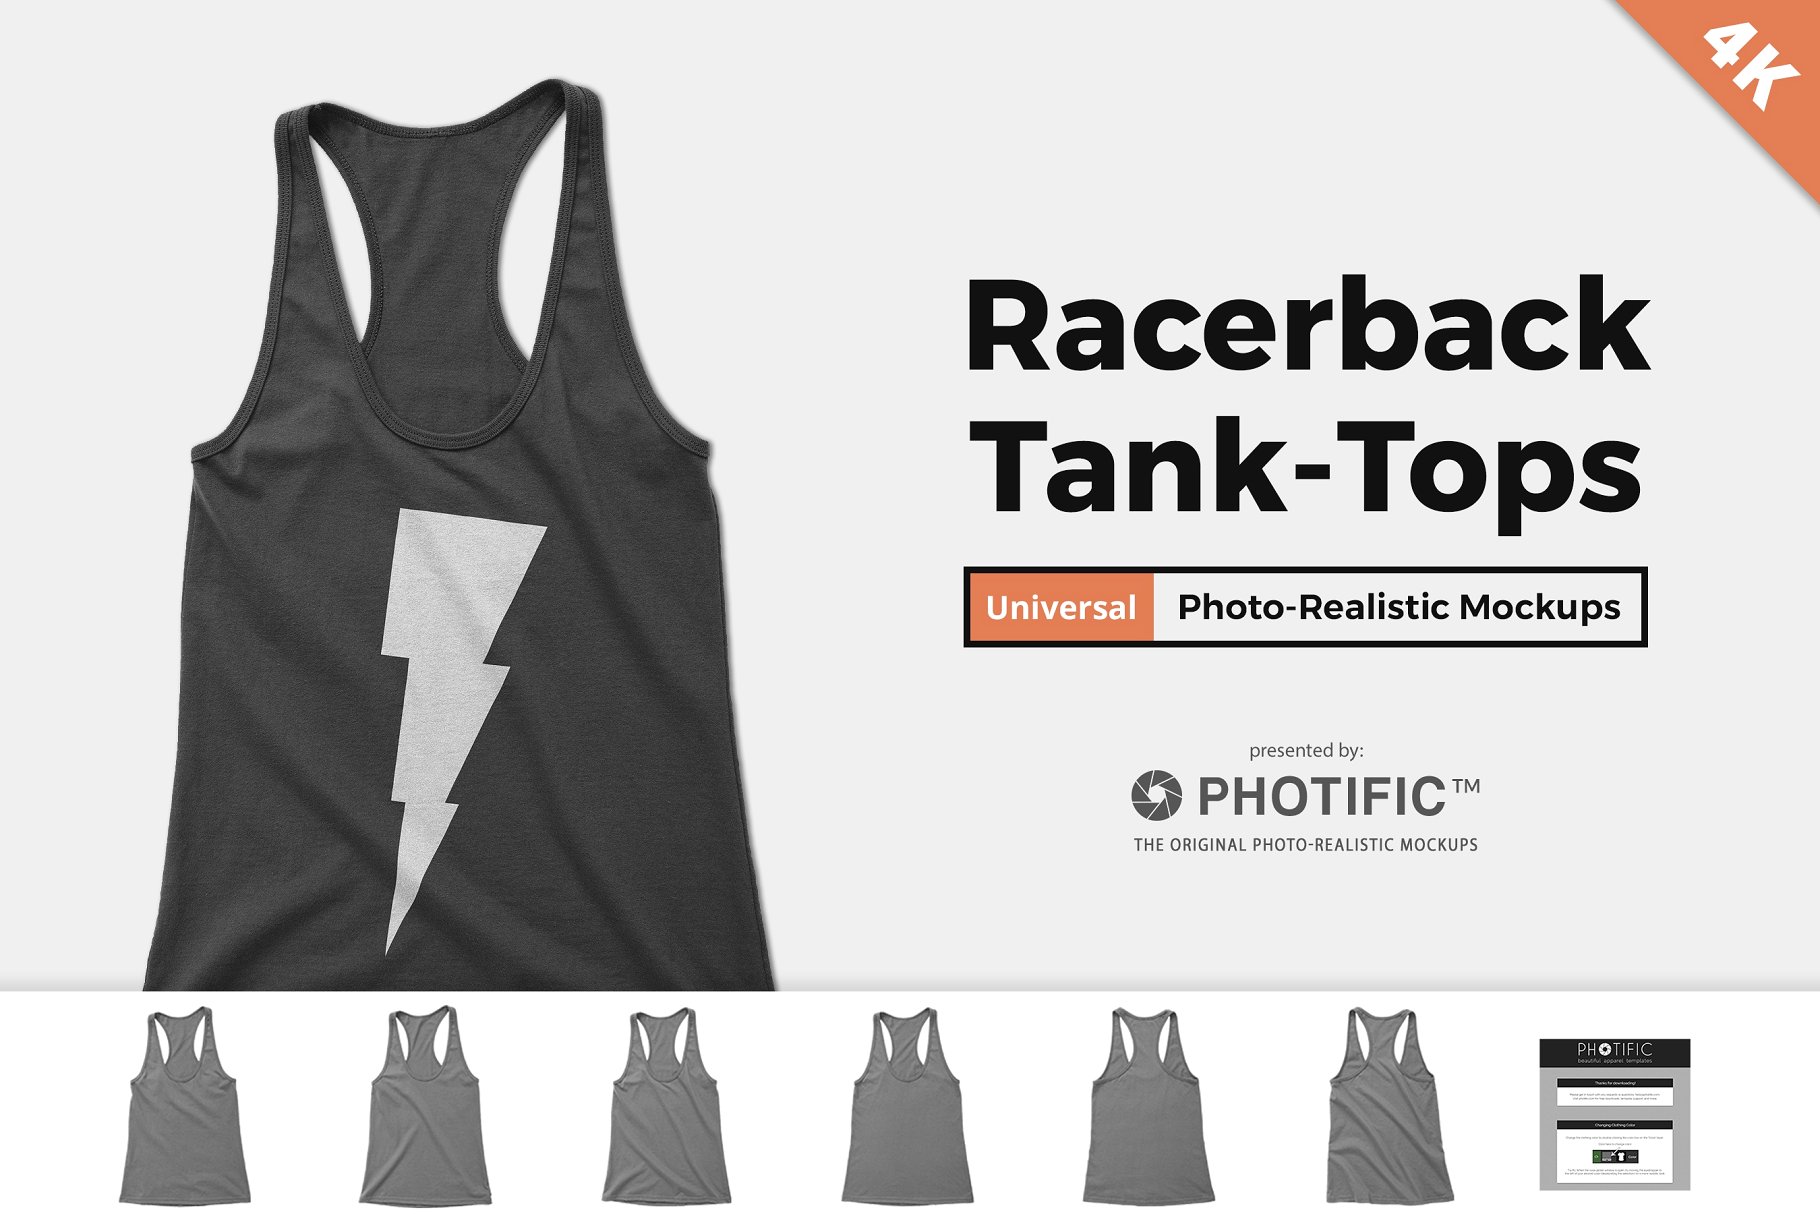 交叉吊带女士背心样机模板 Women’s Racerback Tank-Top Mockups插图